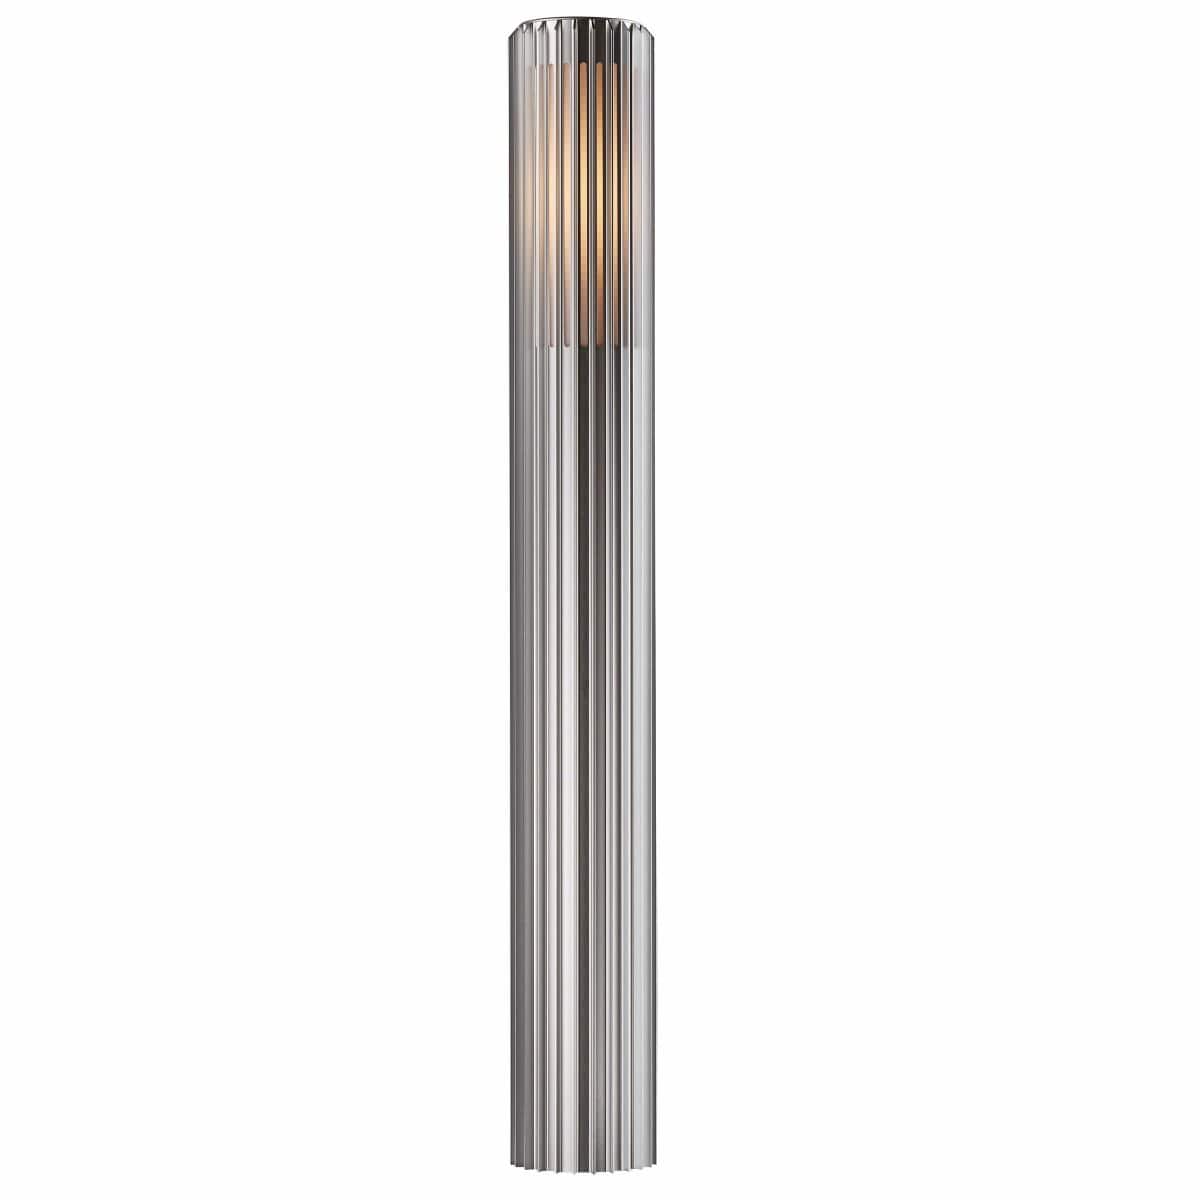 Nordlux Outdoor Lights Aluminium Aludra 95 Tall Outdoor Garden Light, aluminium, black, or brown